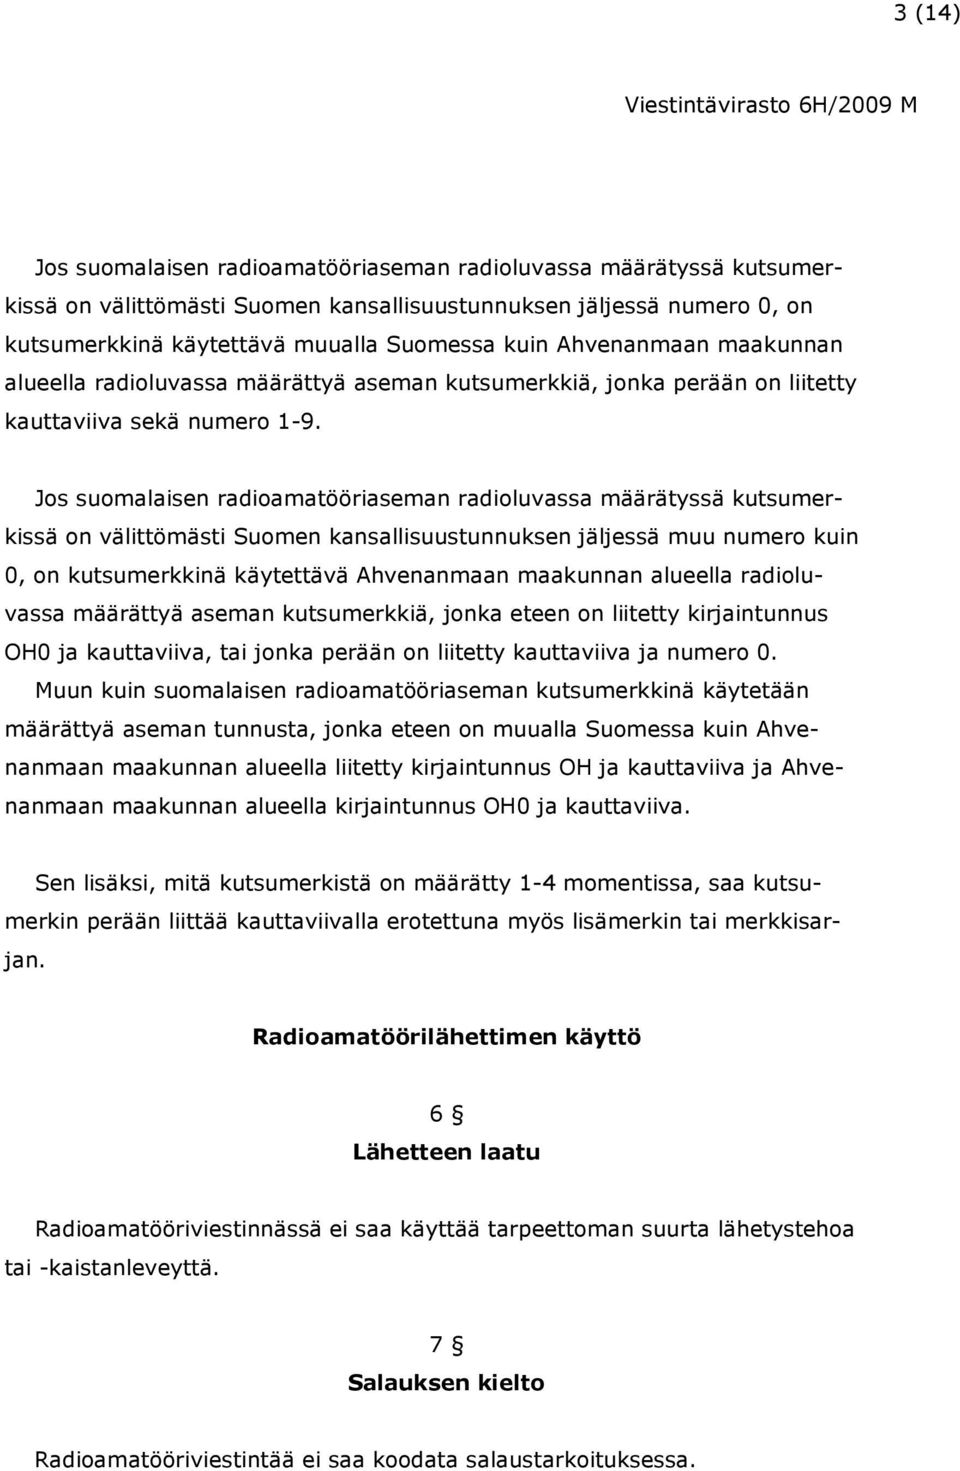 Jos suomalaisen radioamatööriaseman radioluvassa määrätyssä kutsumerkissä on välittömästi Suomen kansallisuustunnuksen jäljessä muu numero kuin 0, on kutsumerkkinä käytettävä Ahvenanmaan maakunnan